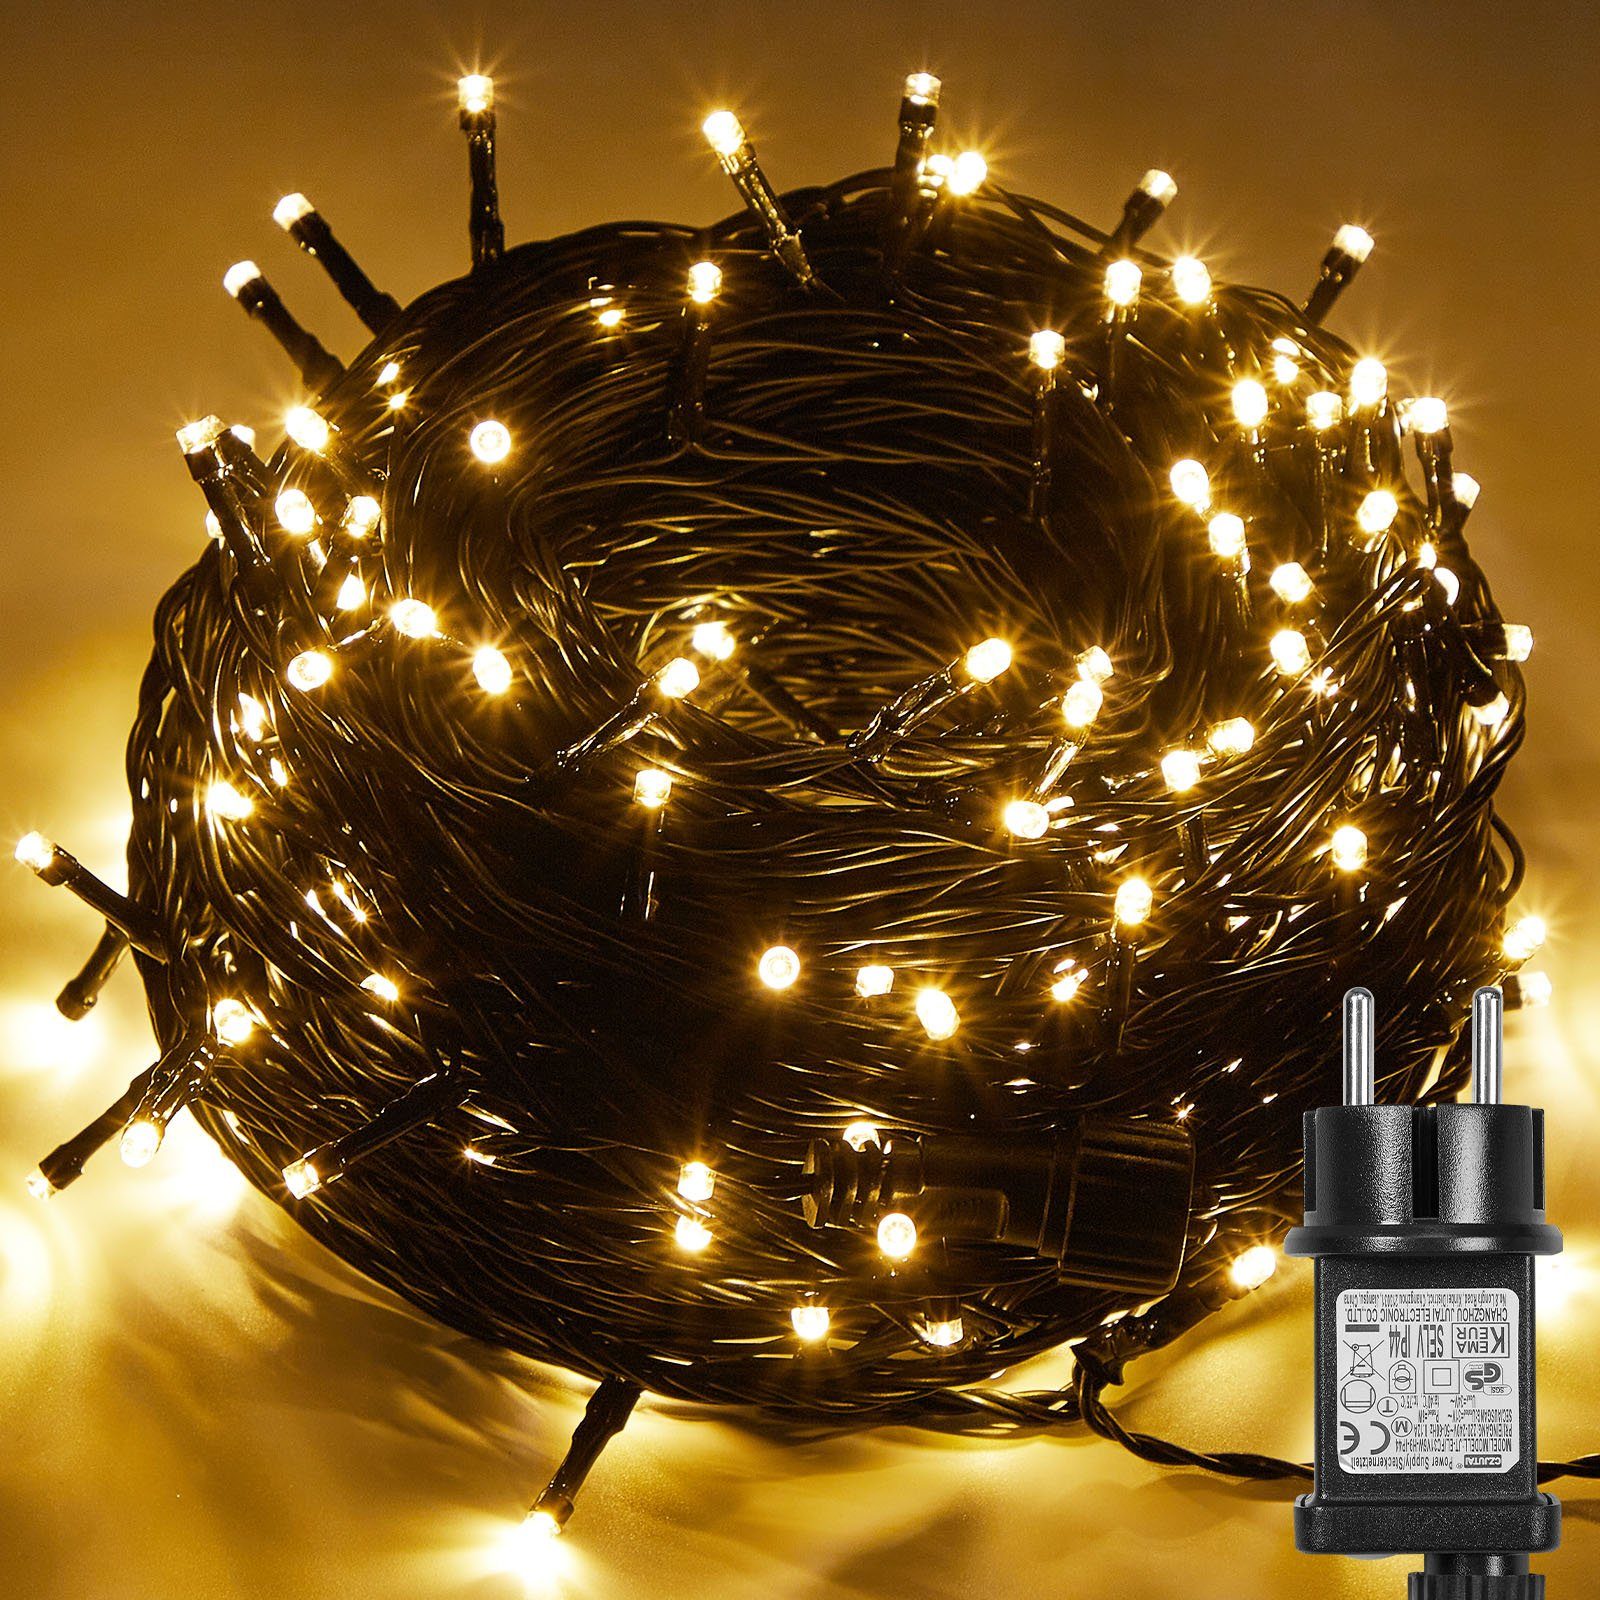 Laybasic LED-Lichterkette LED Lichterkette Weihnachtsbaum Aussen Inner mit Timer Warmweiß, Timer und Speicher, 8 Modi, 31V Energiesparende Lichterkette